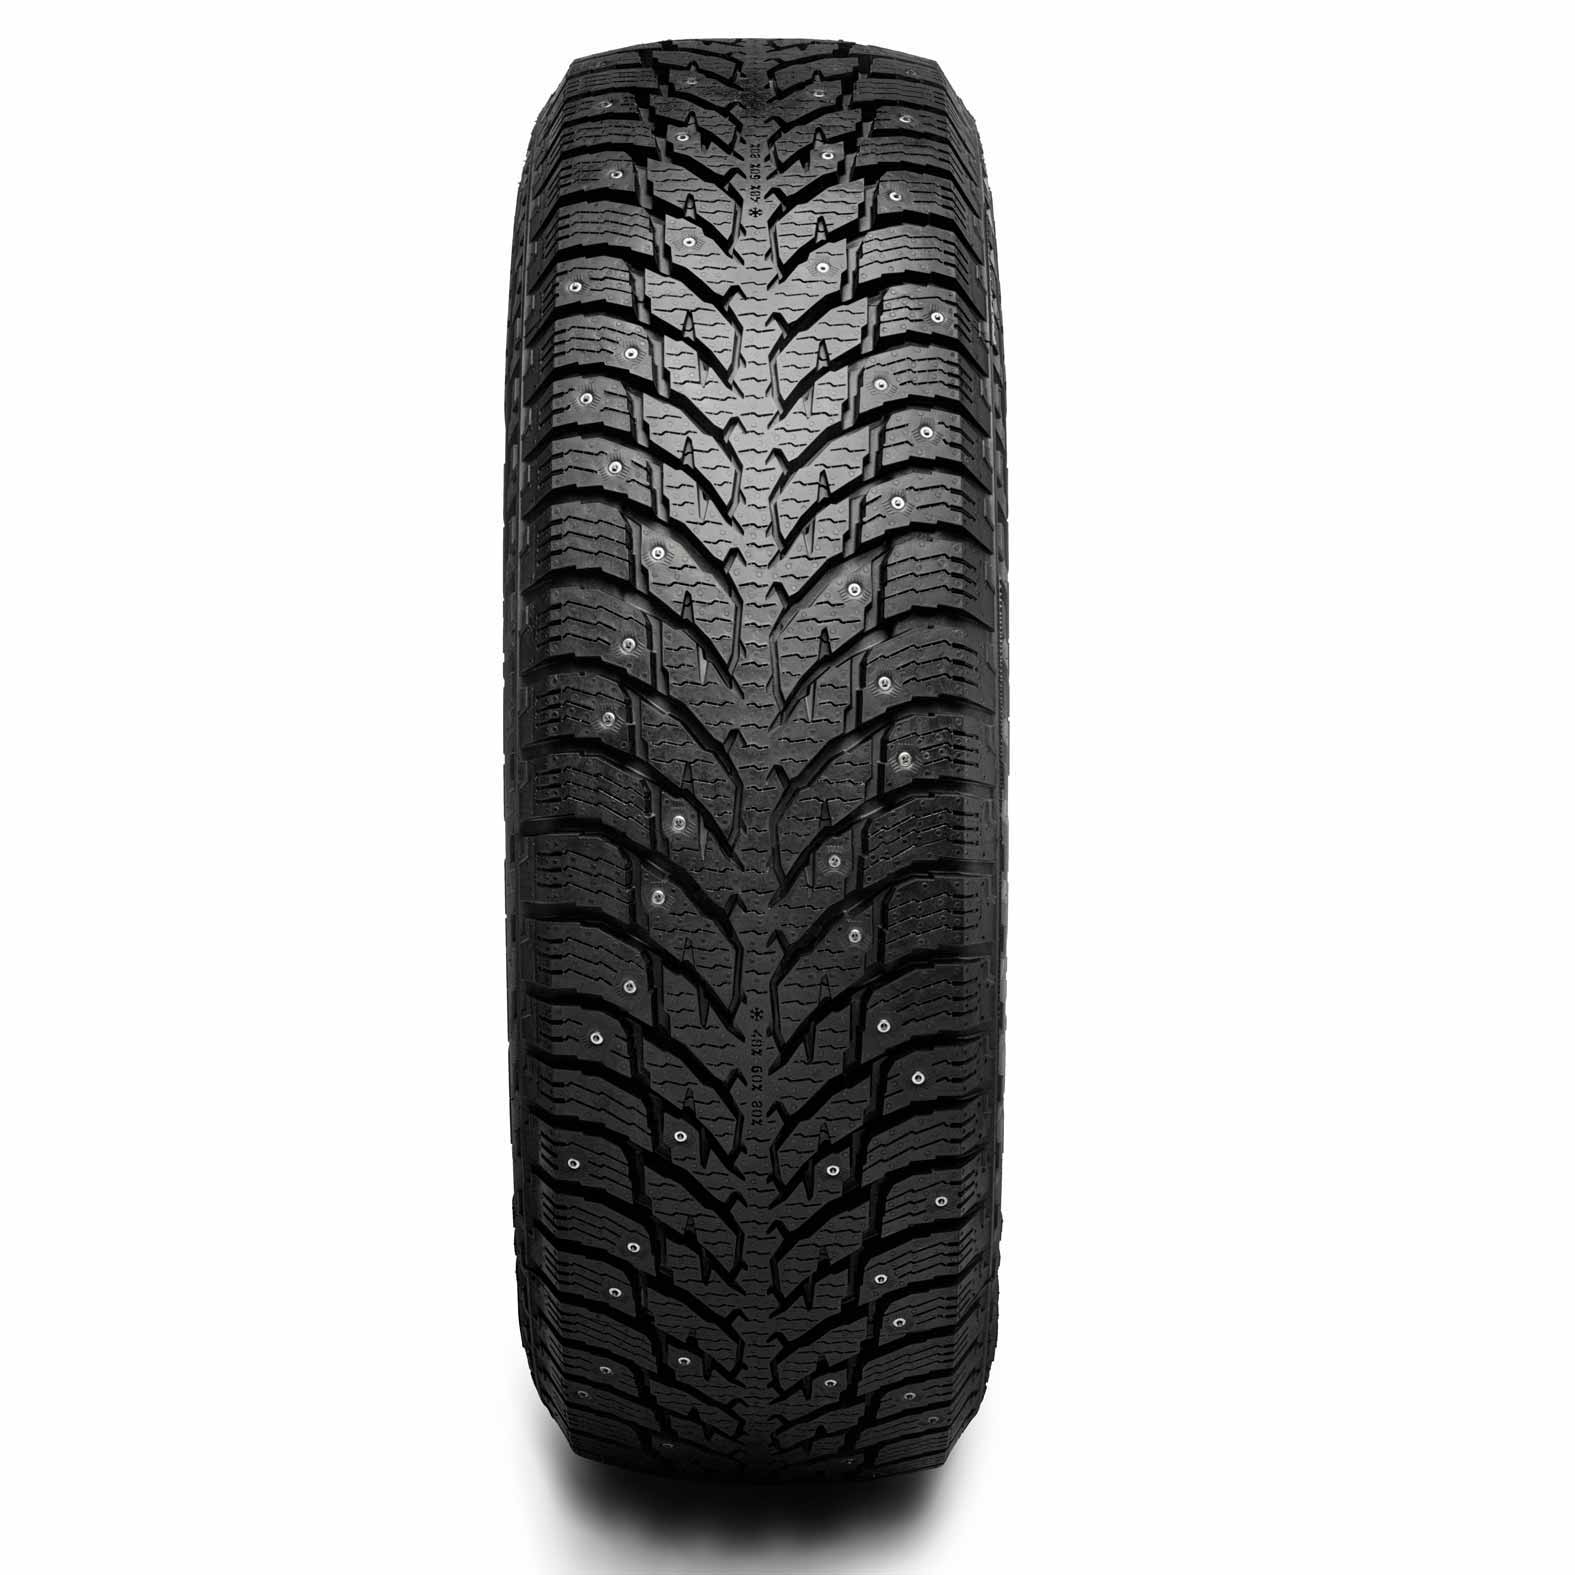 LT3 studded Winter Tire | Nokian for Tires Kal Hakkapeliitta